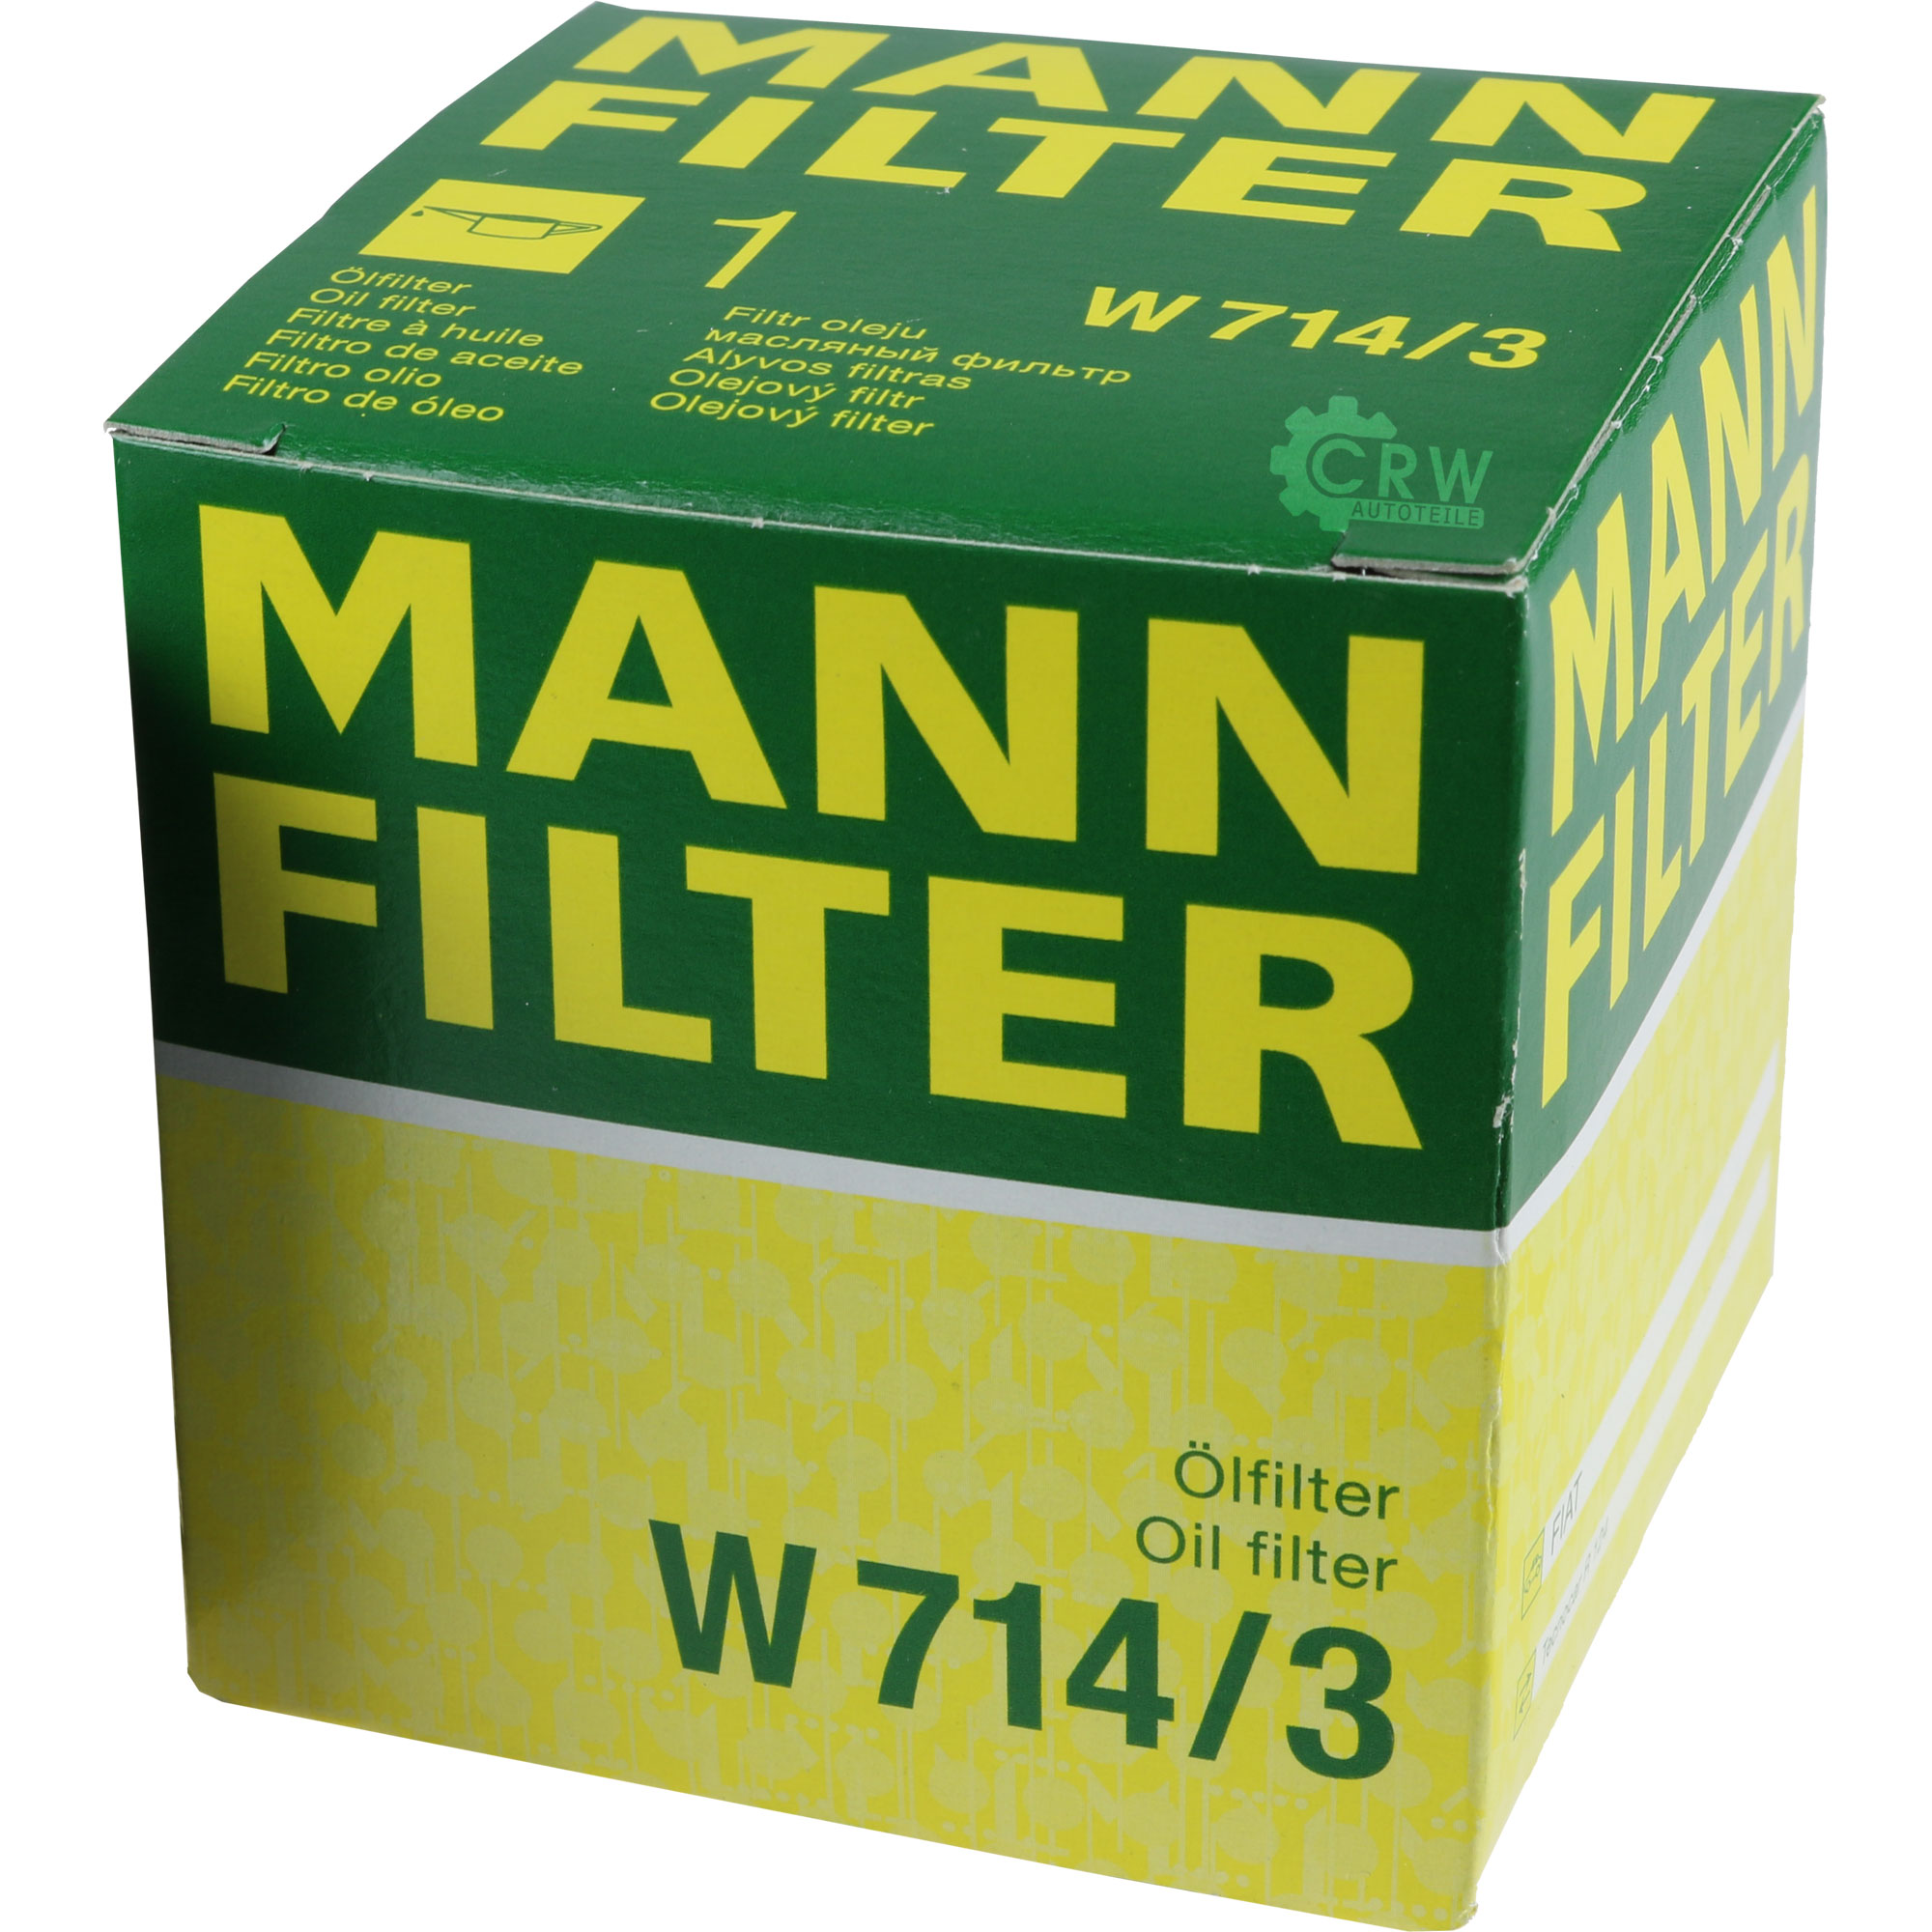 MANN-FILTER Ölfilter W 714/3 Oil Filter